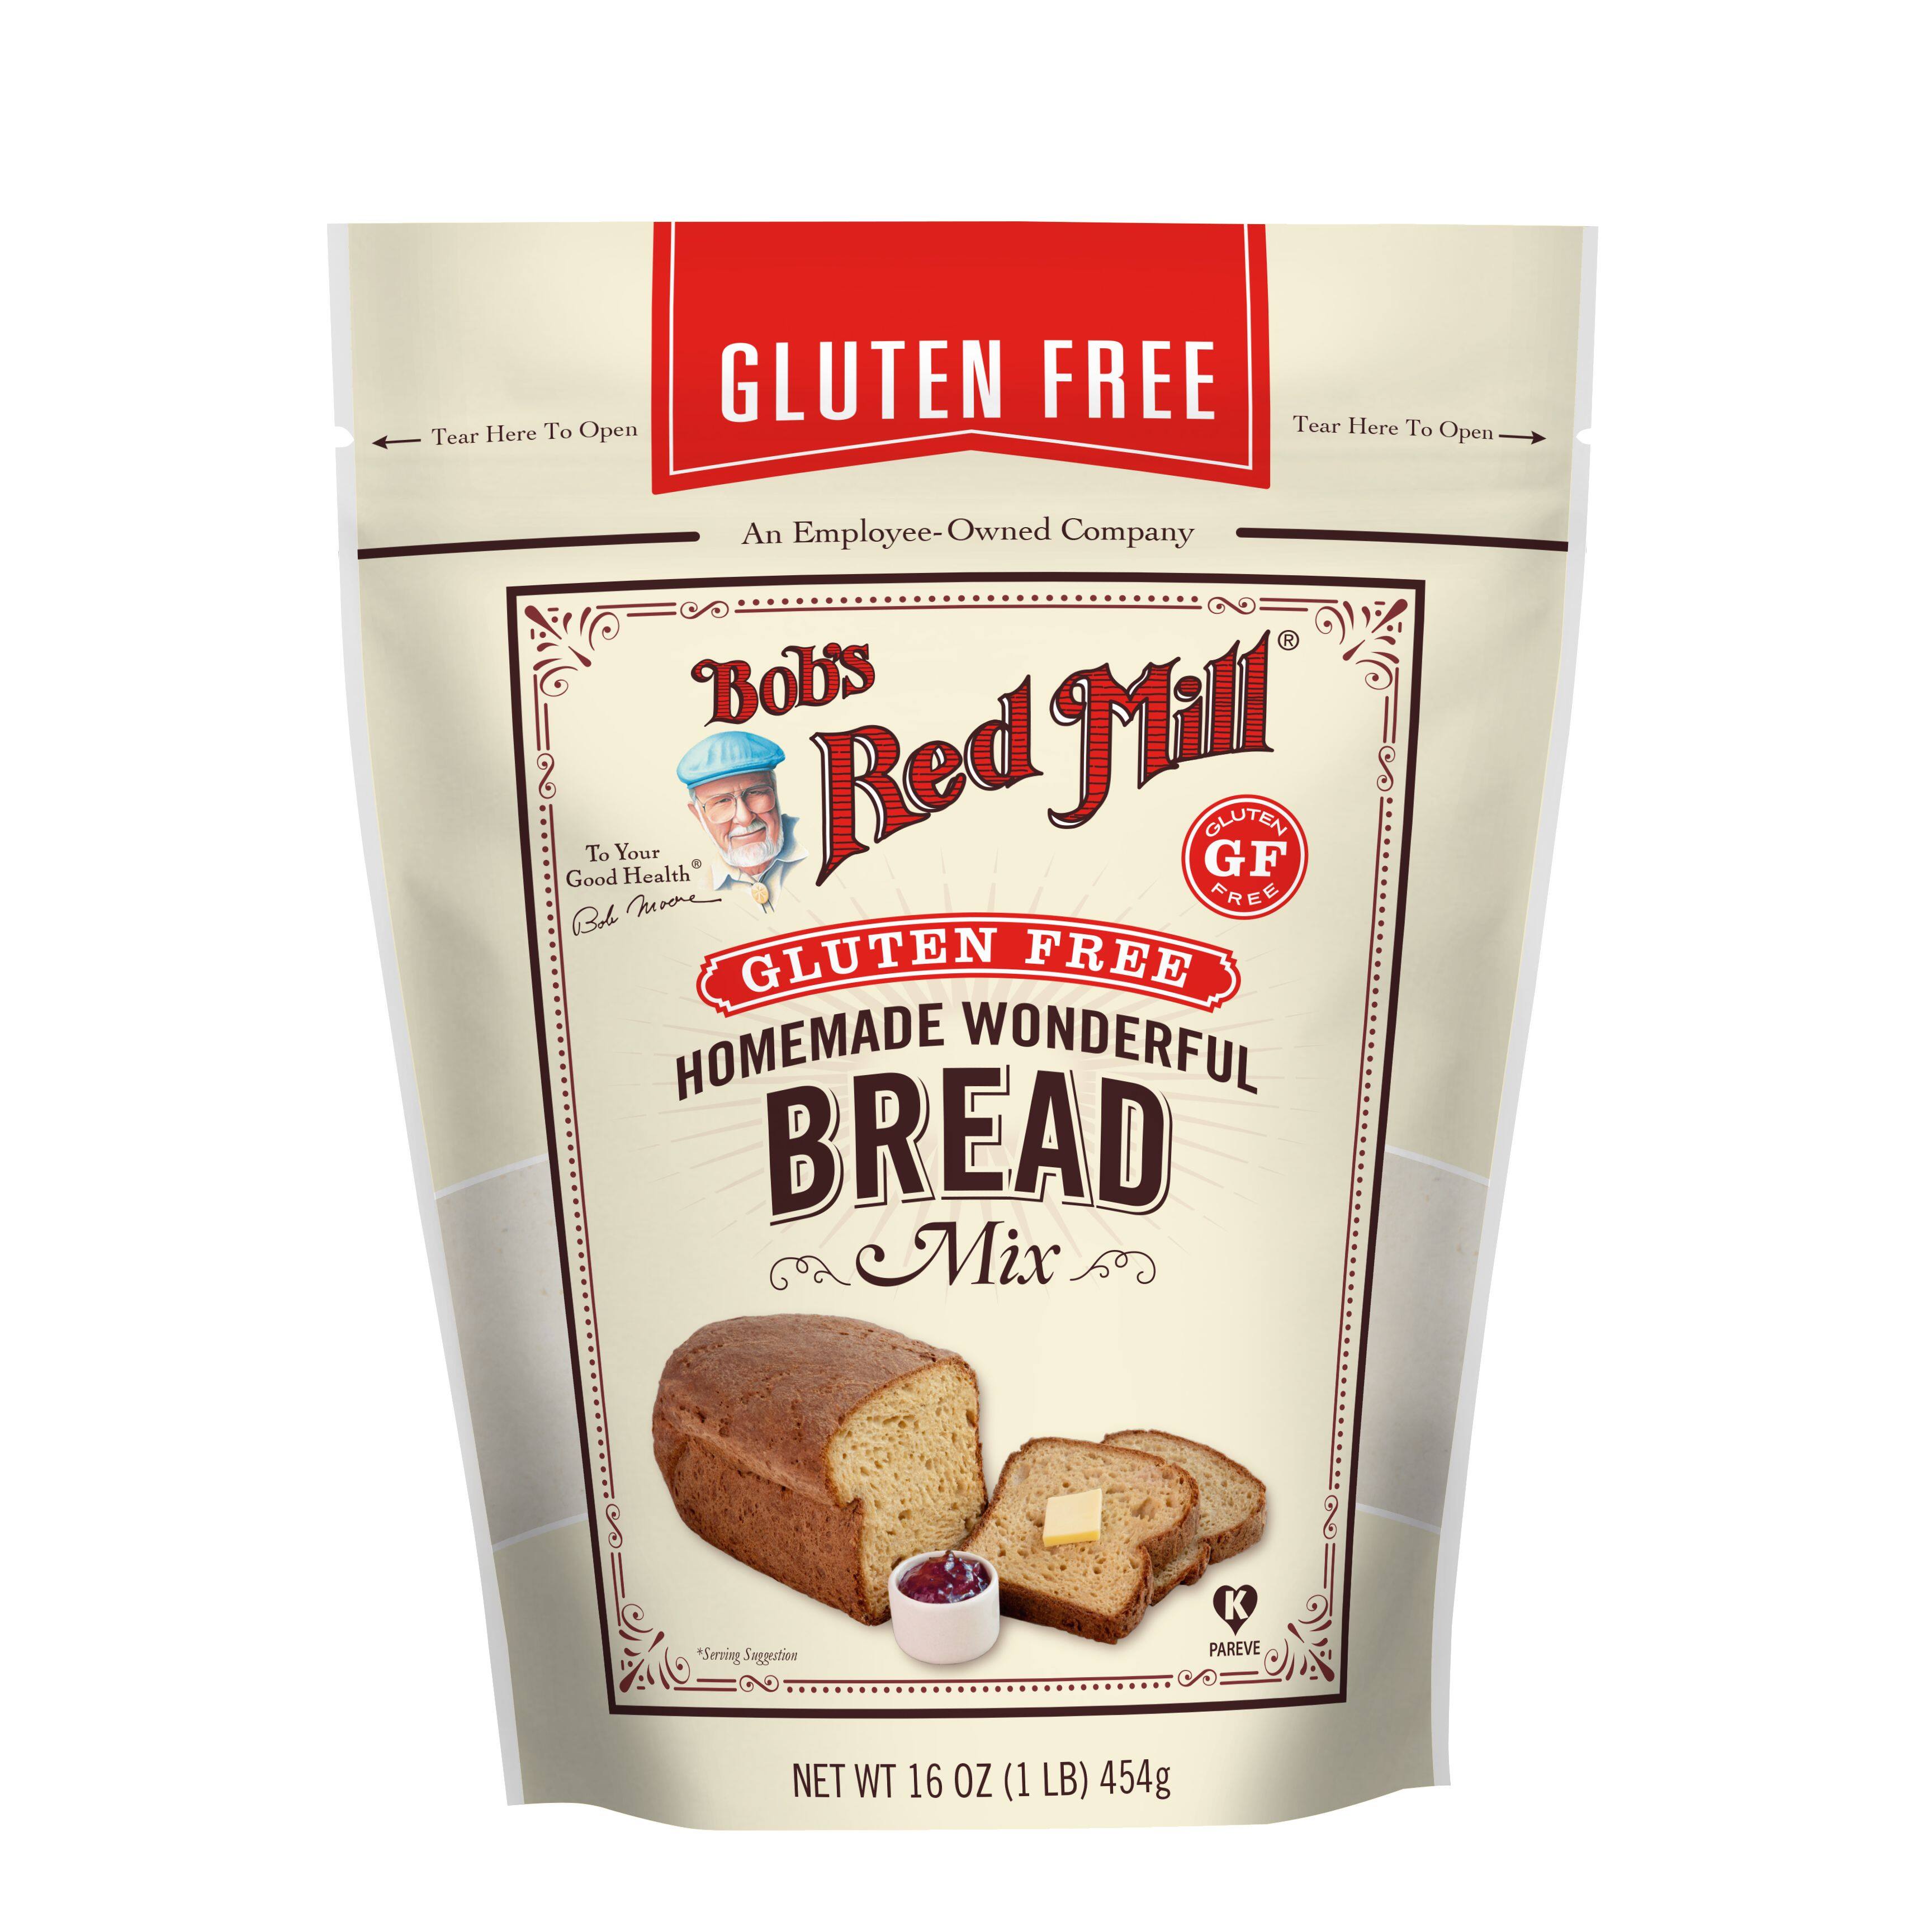 แป้งสำหรับทำขนมปัง 100% 🔥 Gluten Free Homemade Wonderful Bread (453 gram) 🔥Bob's Red Mill Brand. นำเข้าจากอเมริกา ผ่านกระบวนการกำจัดกลูเตน ทำขนมปัง